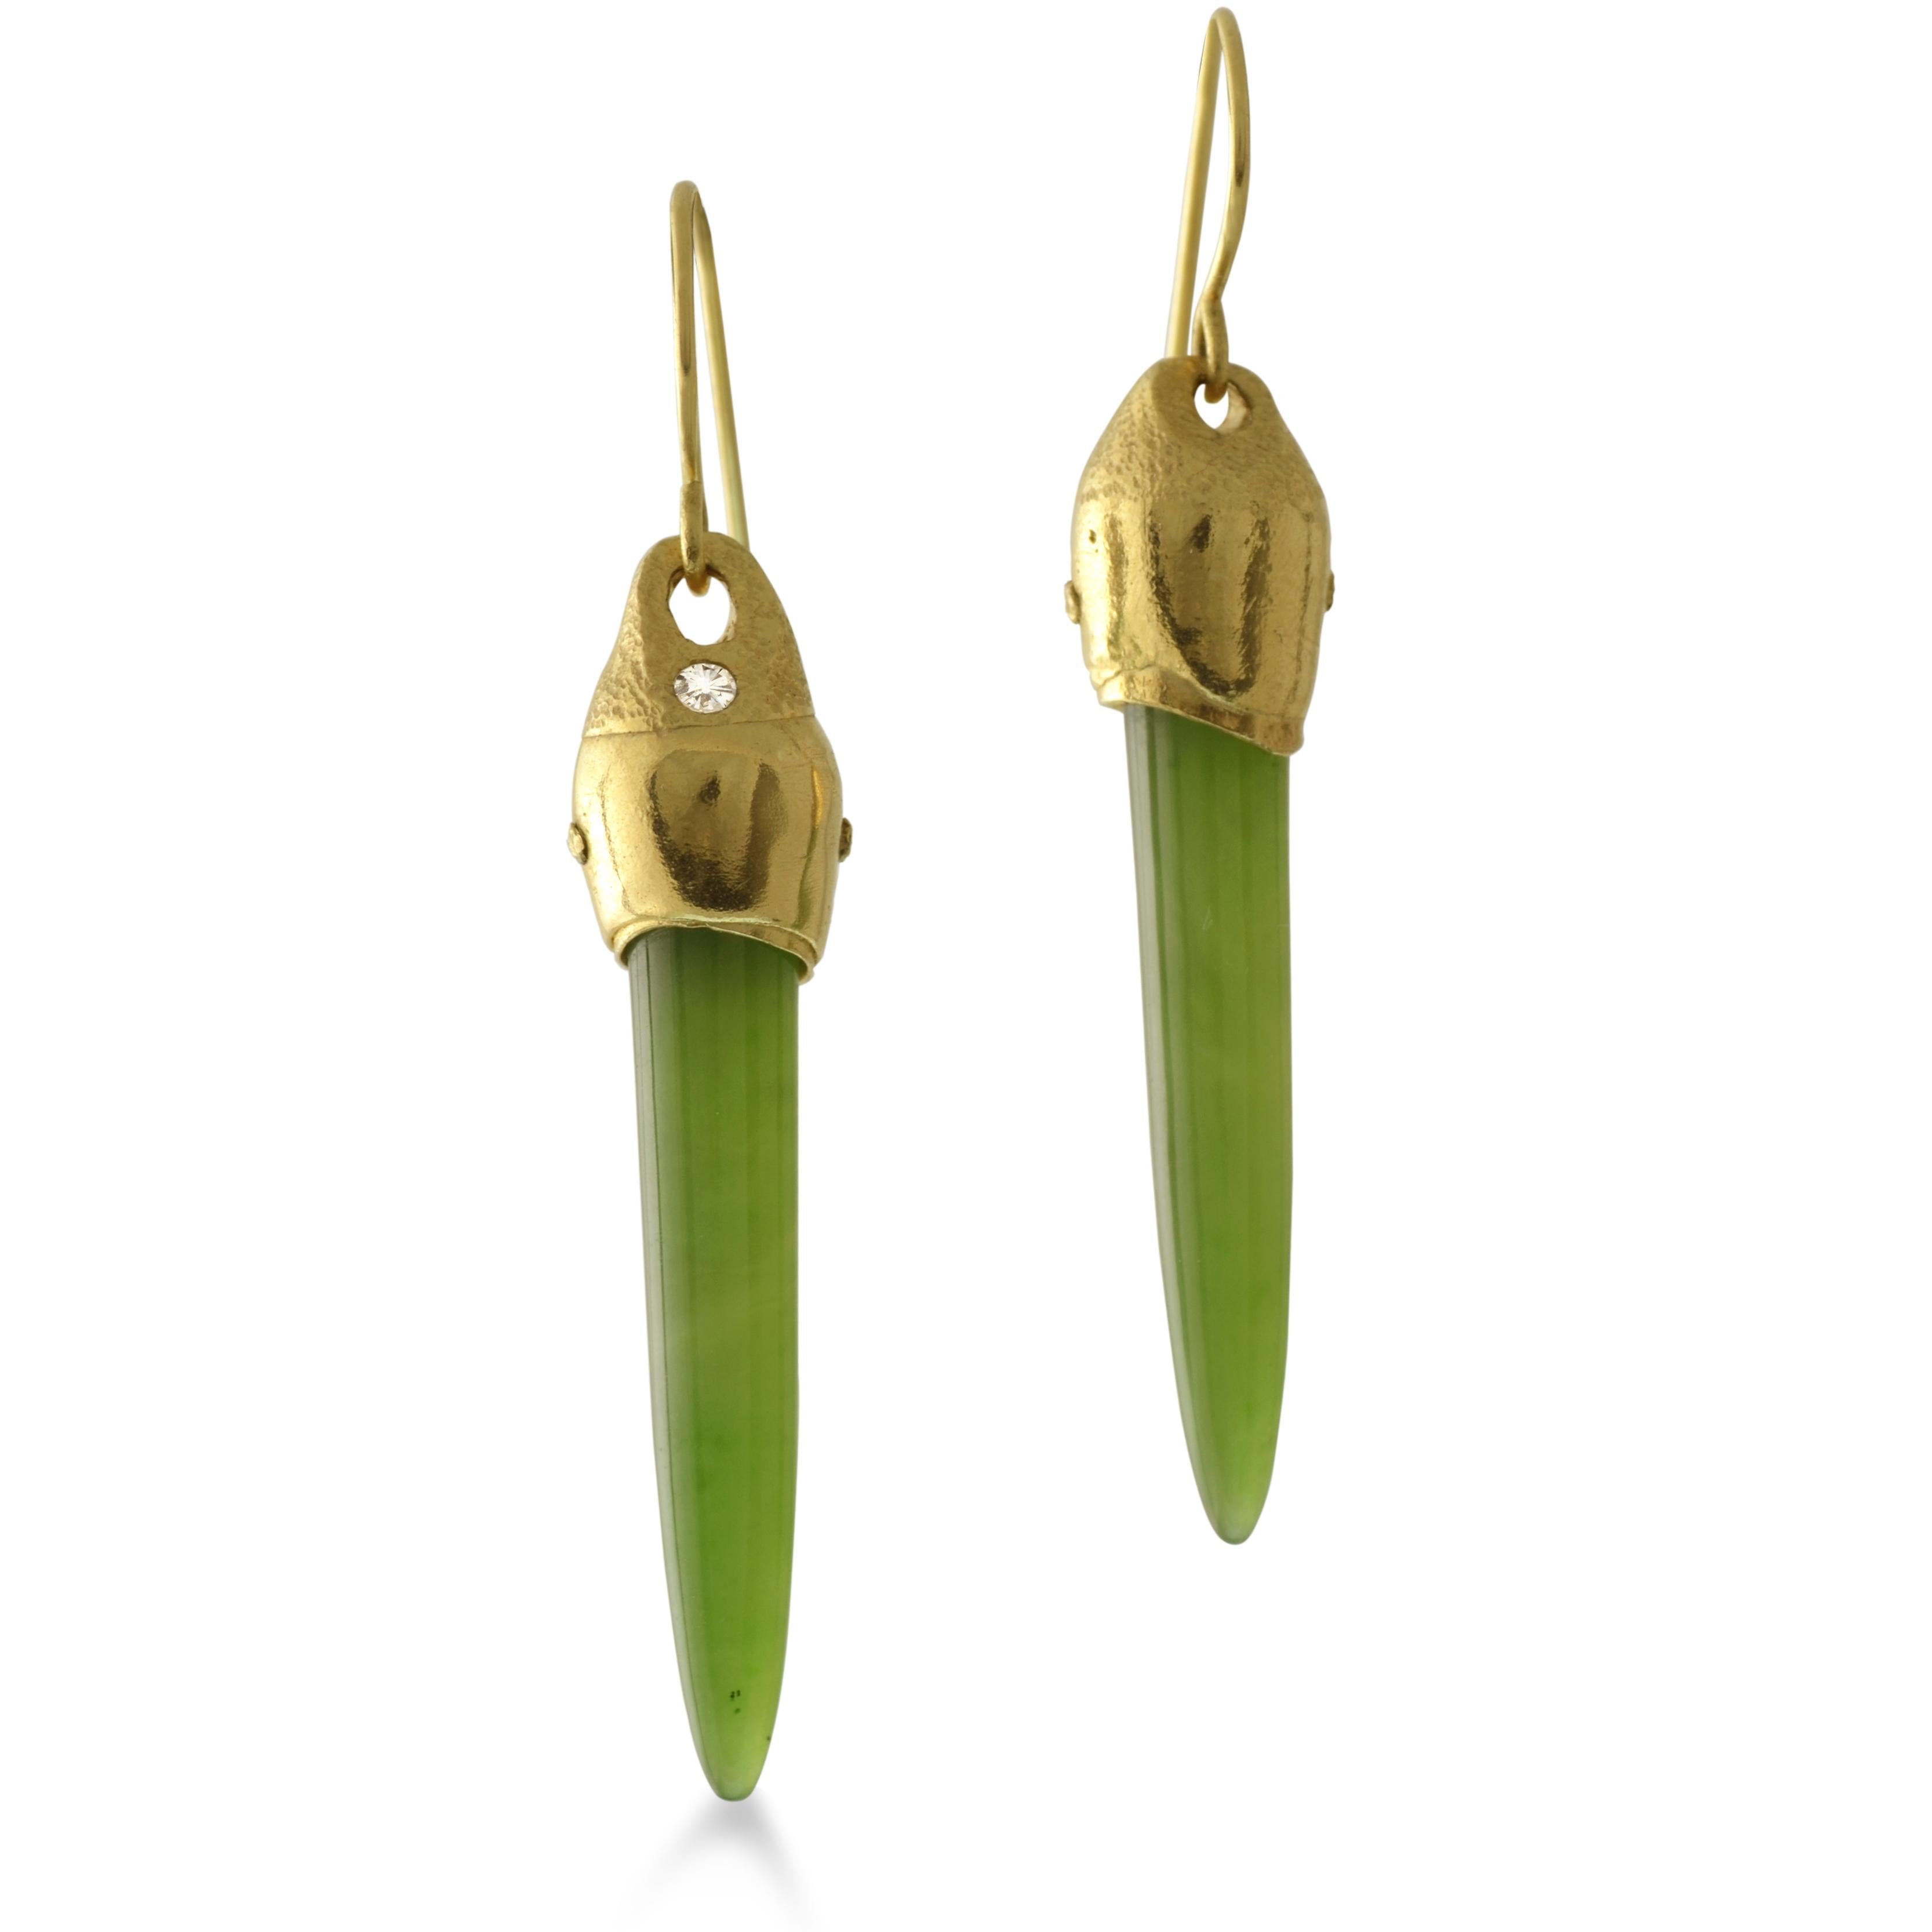 Gleich zu sein wie jemand anderes ist nicht so interessant wie das eigene Ich. Wir haben diese Nephrit-Jade-Ohrringe kreiert, damit Sie tragen können, was Sie fühlen, und damit sie in Ihren Ohren fabelhaft aussehen. Diese länglichen, kugelförmigen,